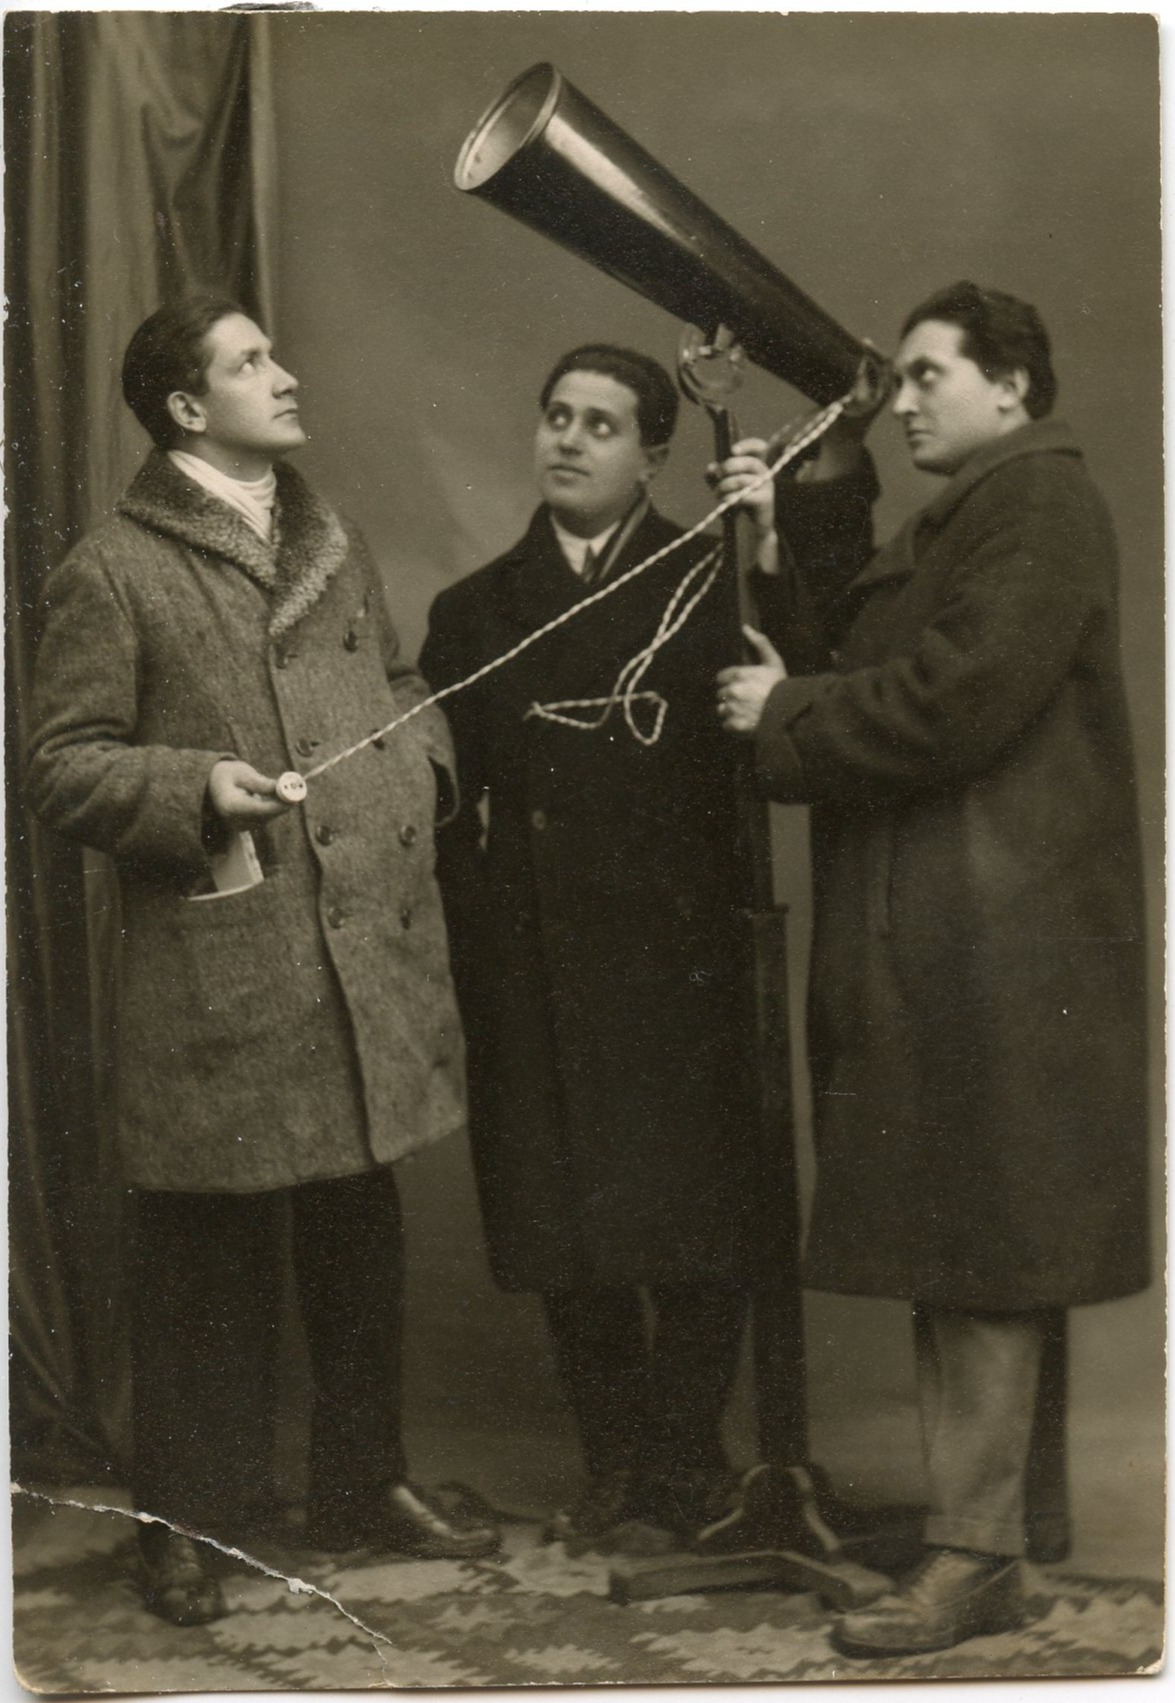 Ancienne photo de trois personnes, l’une regardant à travers un cône tandis qu’une autre tient une ficelle attachée.